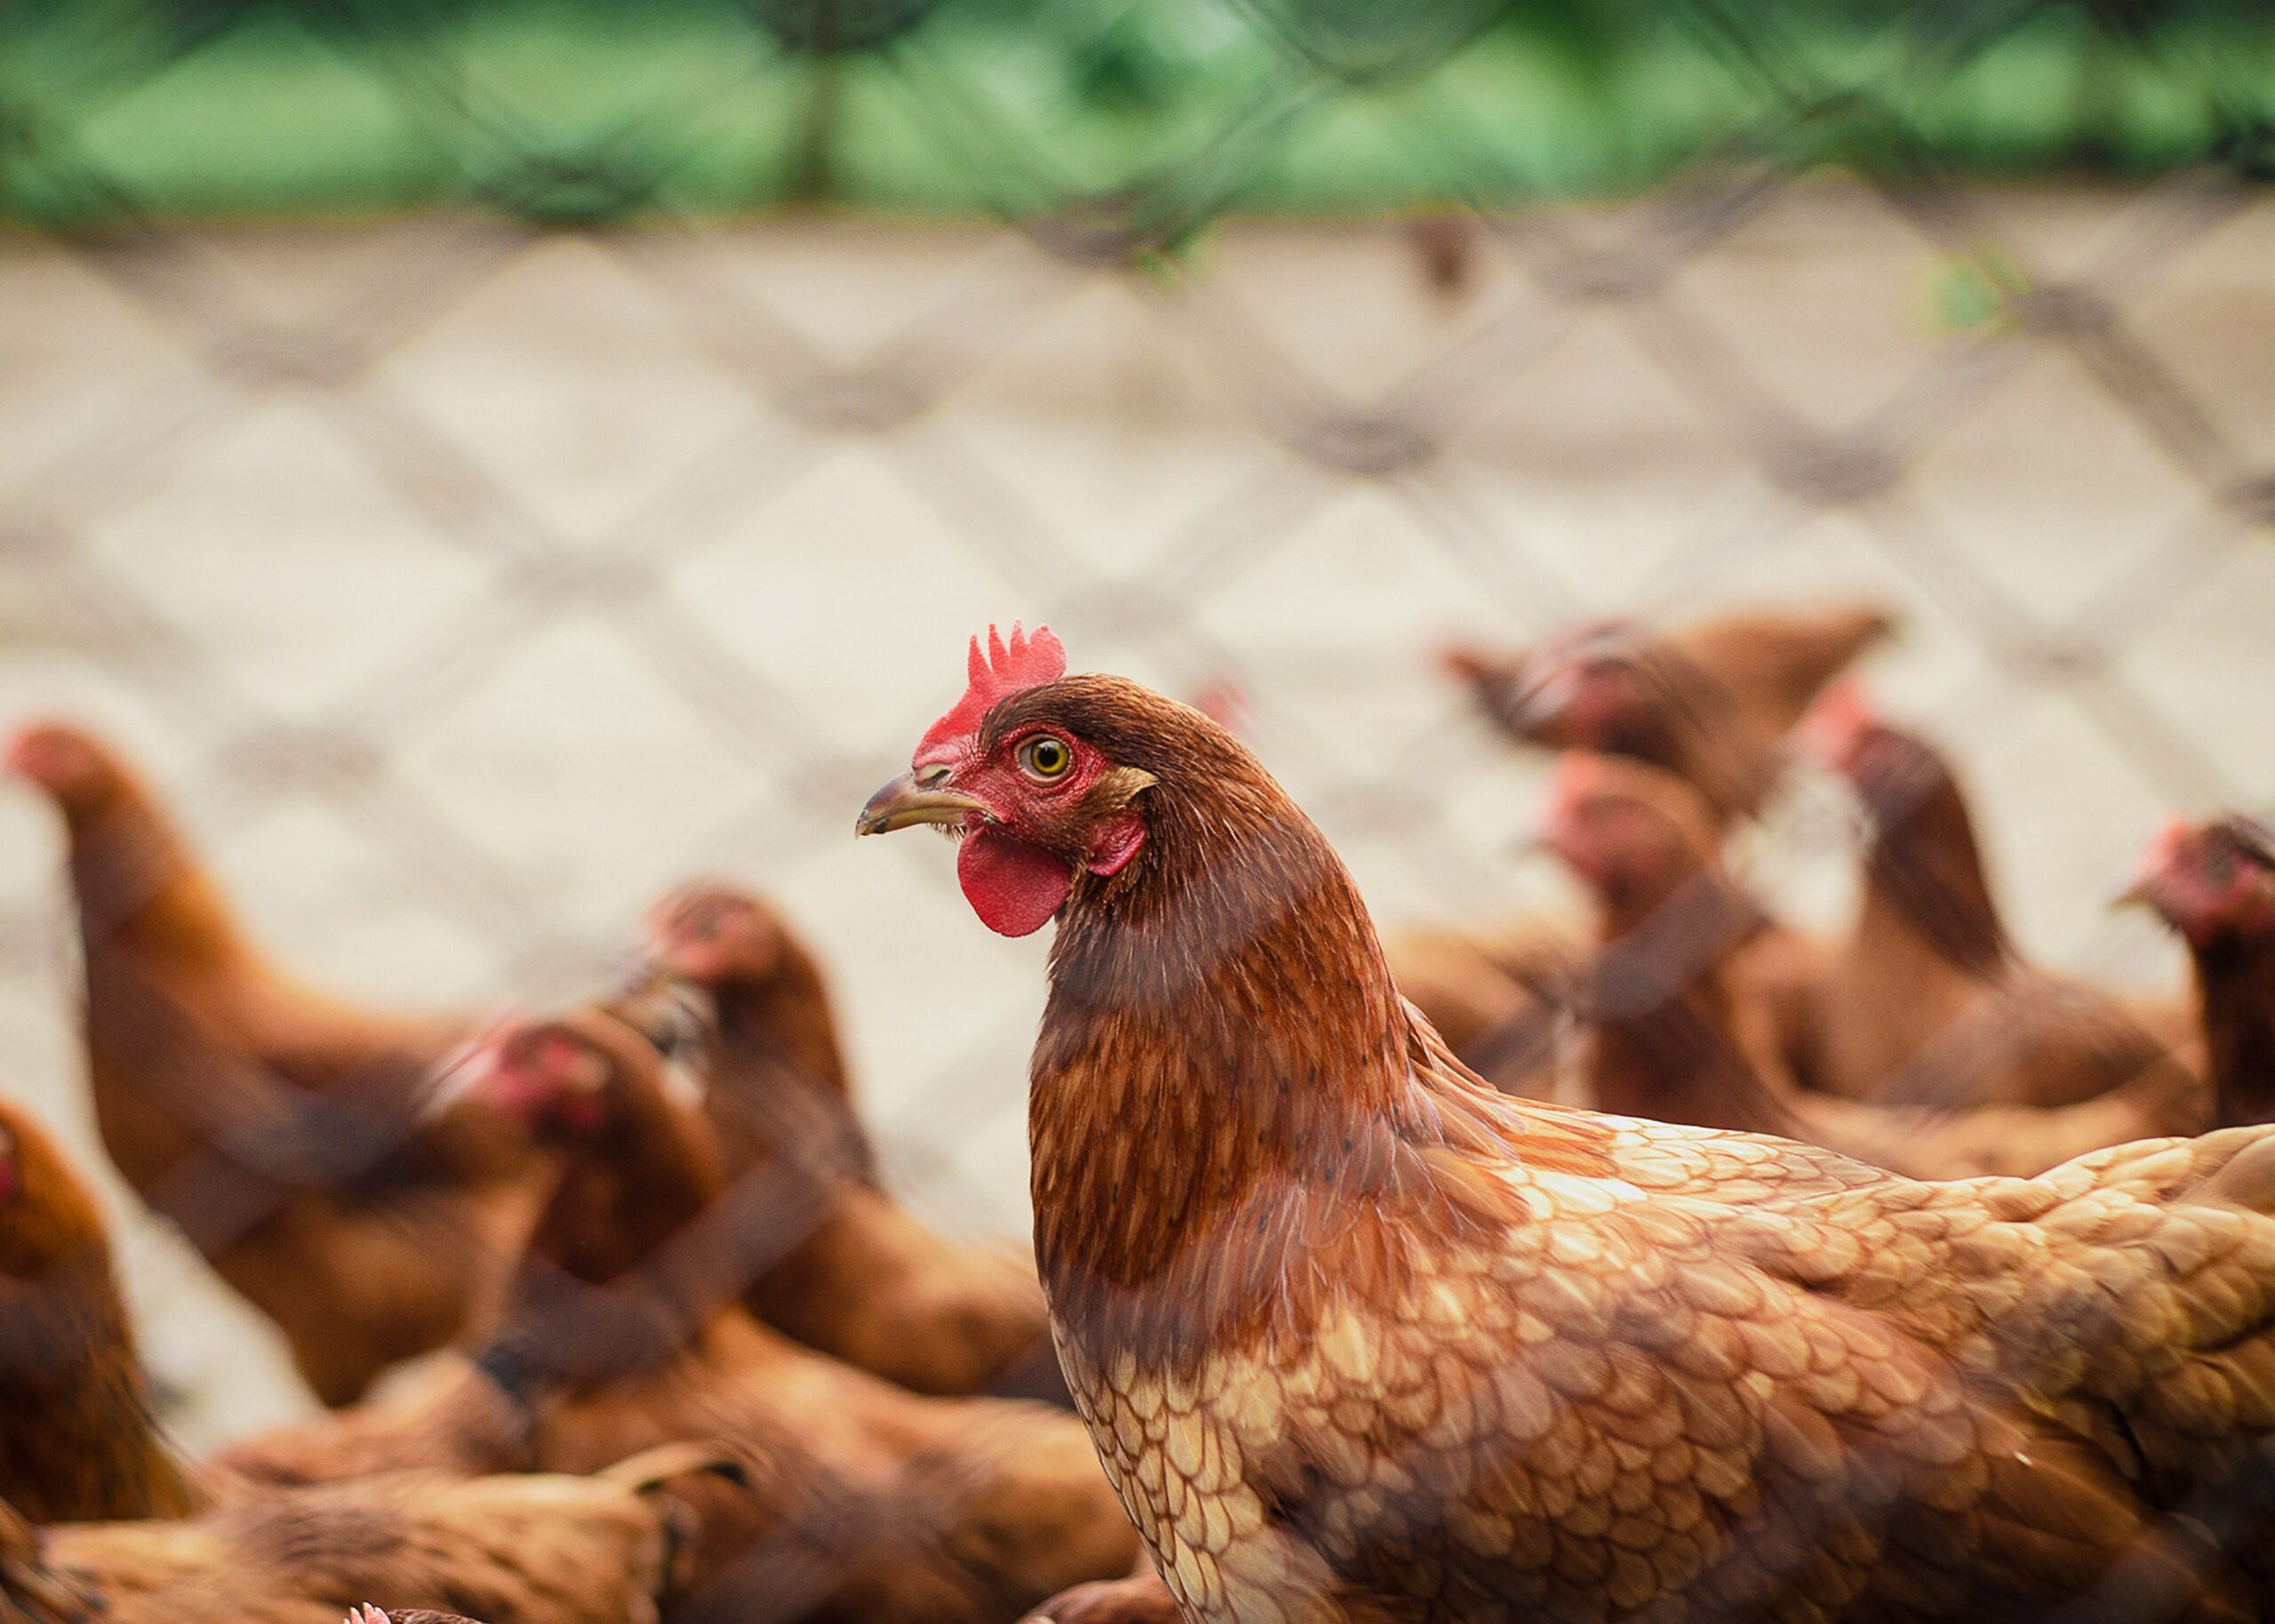 Para evitar el contagio de gripa aviar, se debe evitar el contacto con especies salvajes